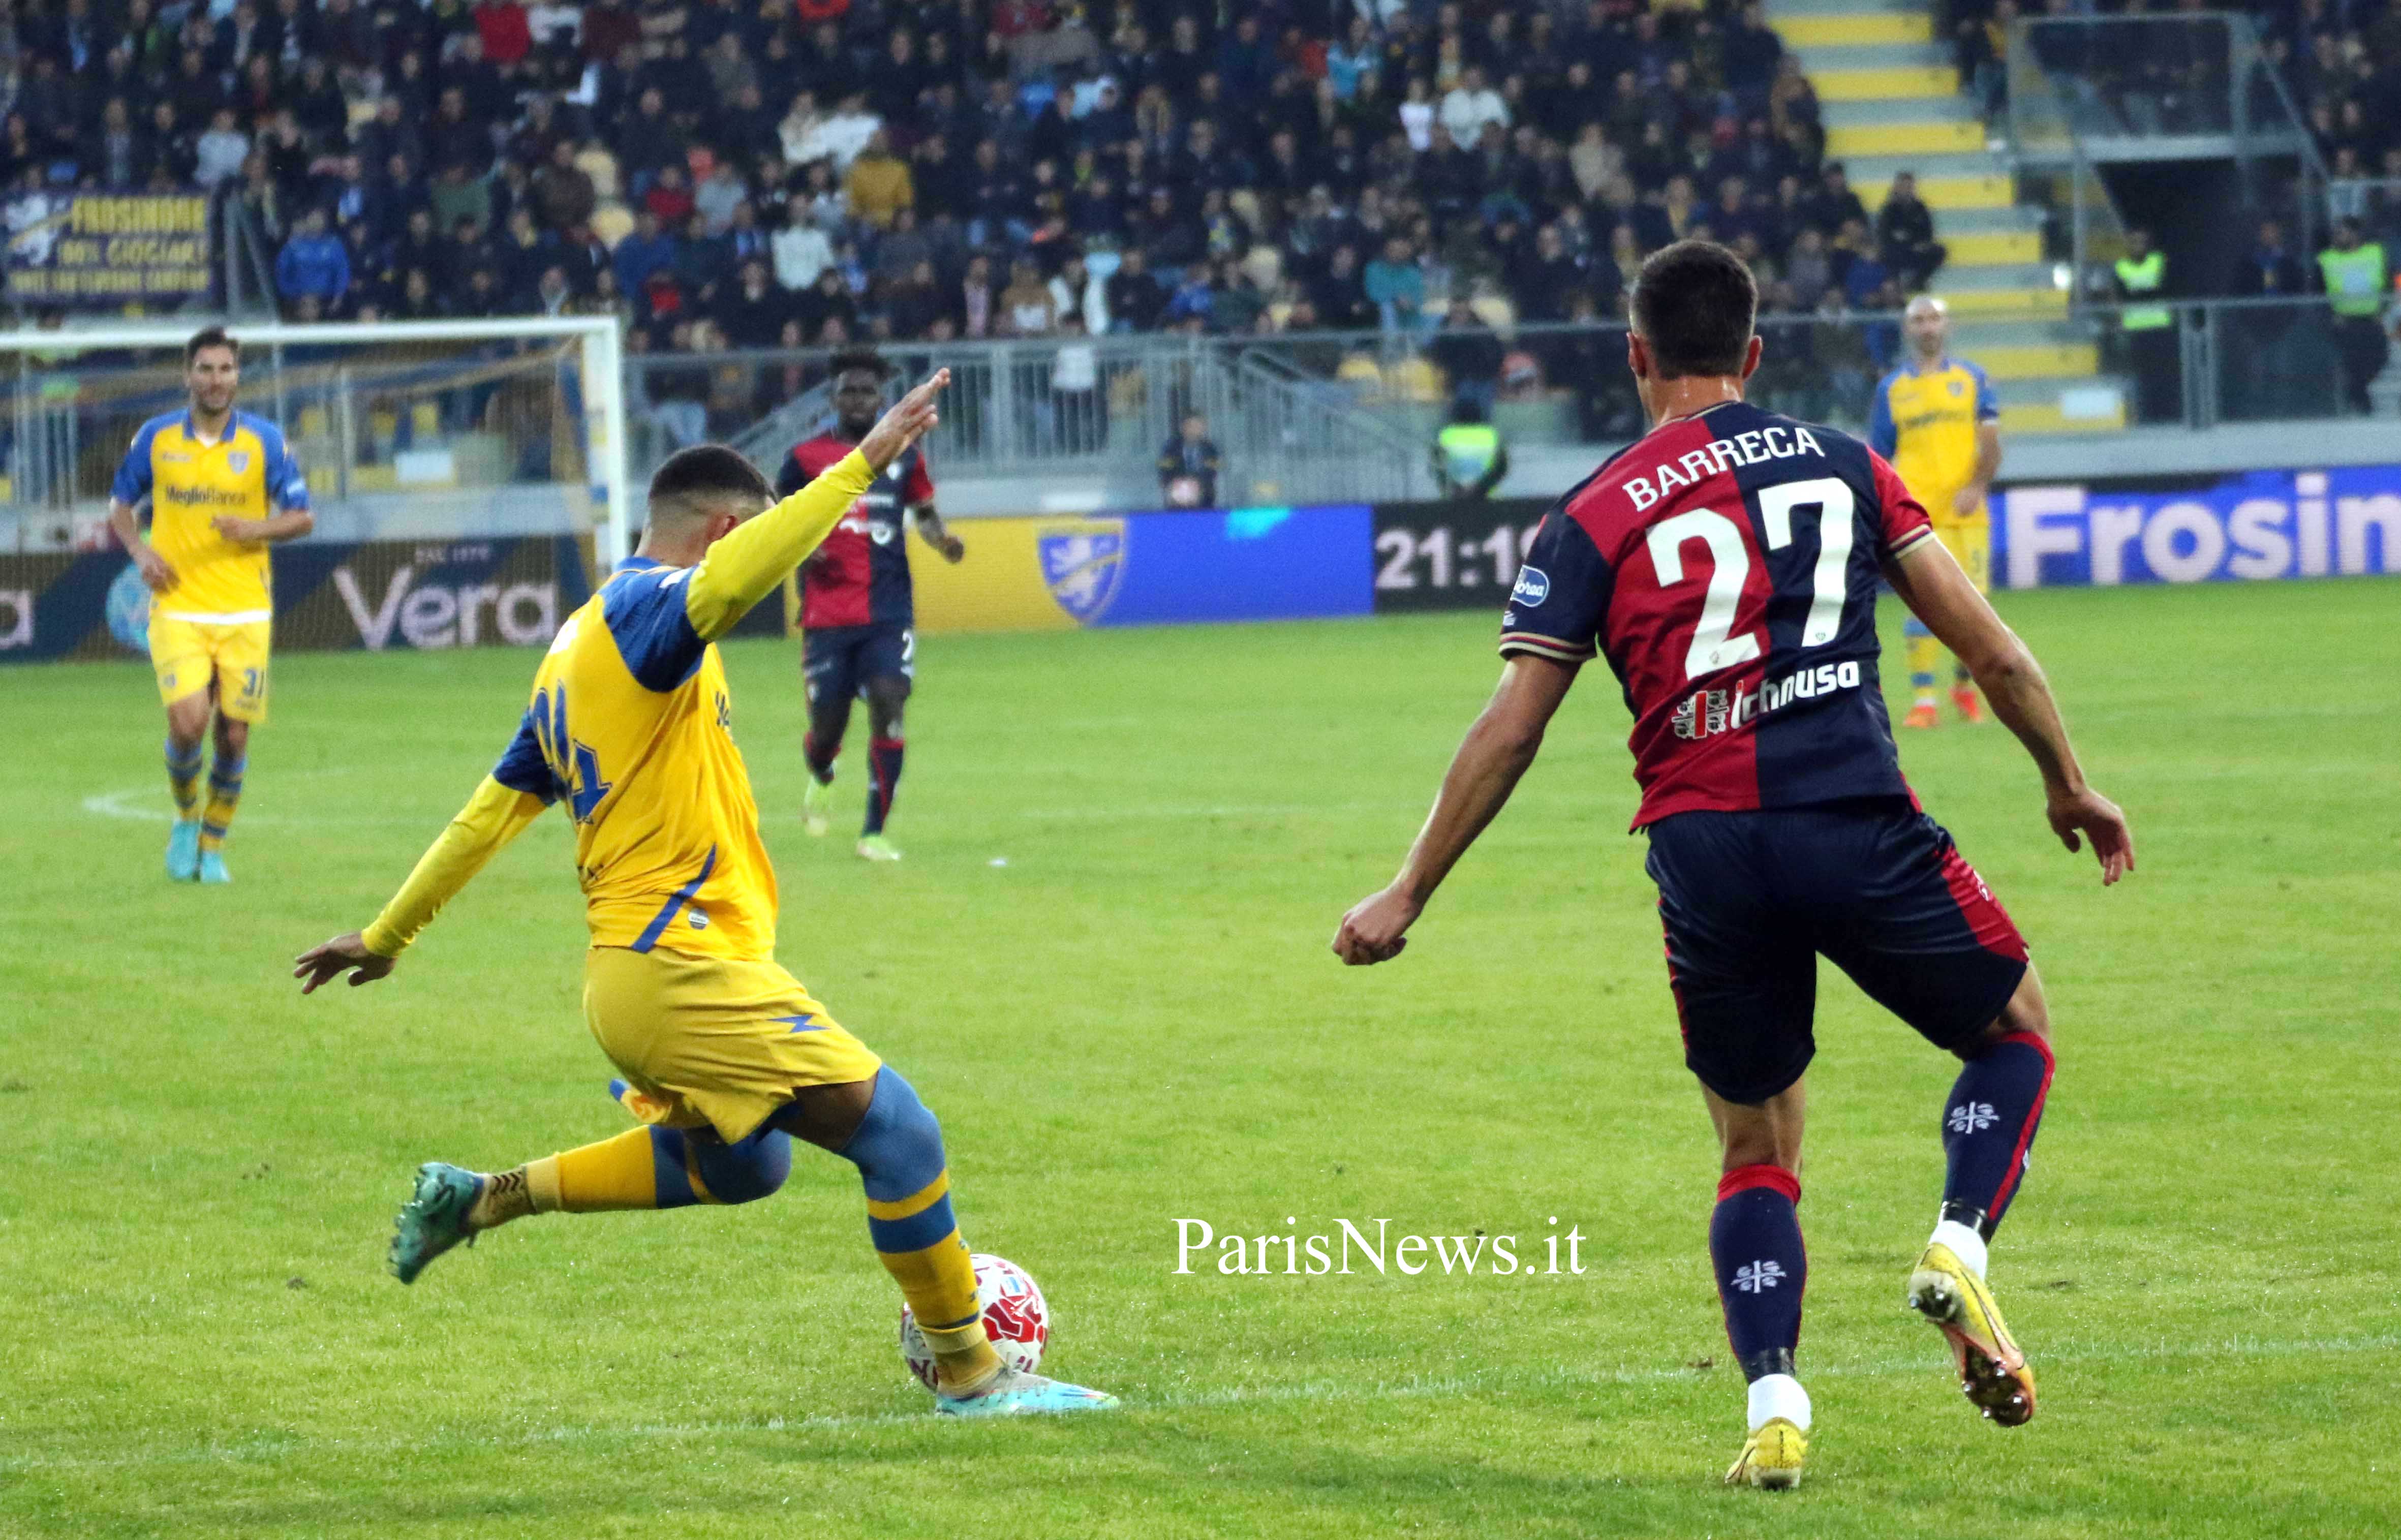 Frosinone - Cagliari 2-2